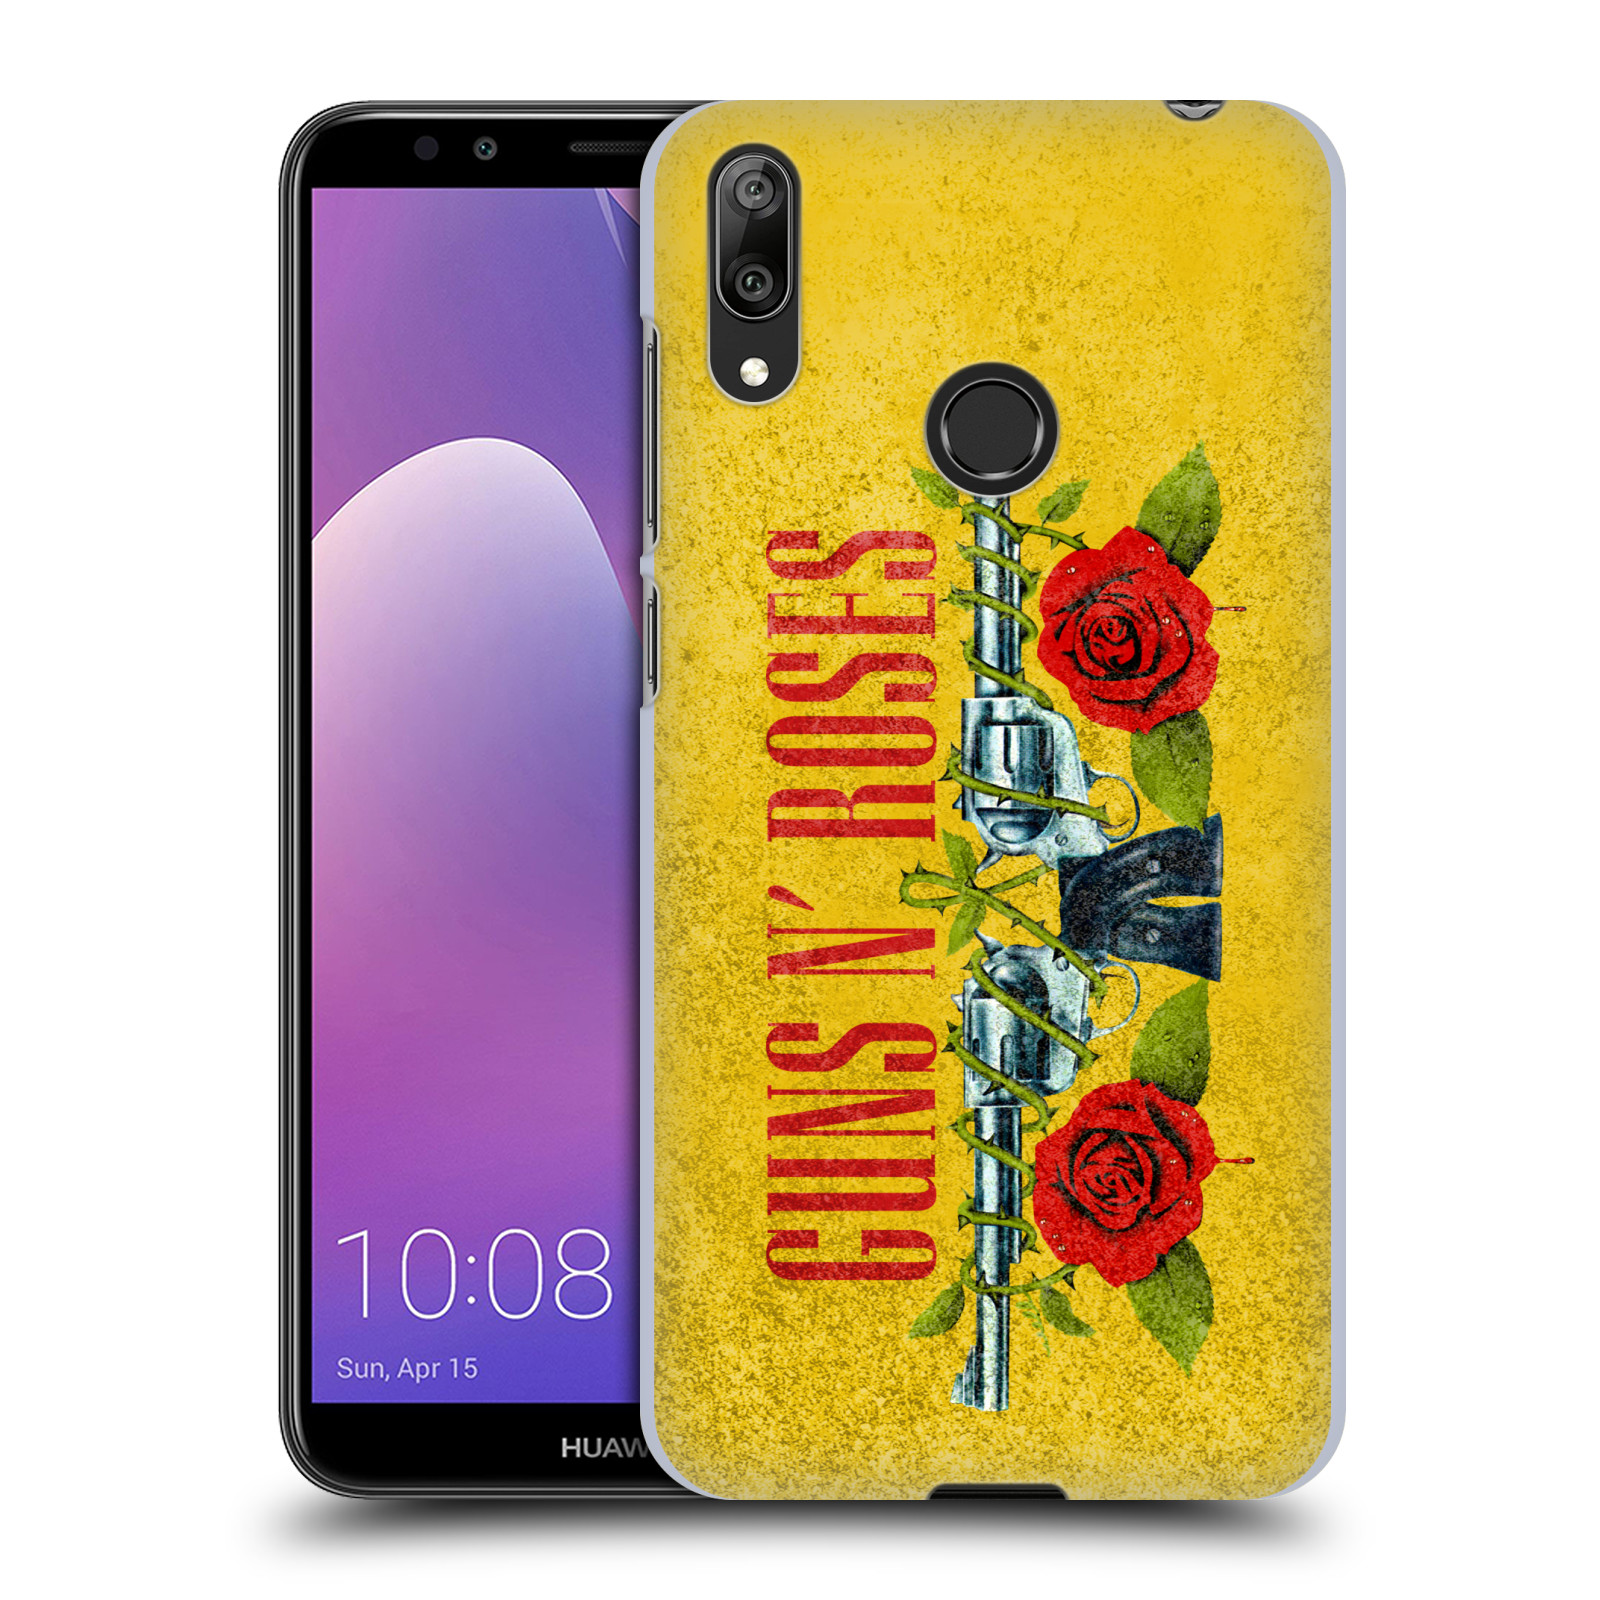 Pouzdro na mobil Huawei Y7 2019 - Head Case - hudební skupina Guns N Roses pistole a růže žluté pozadí